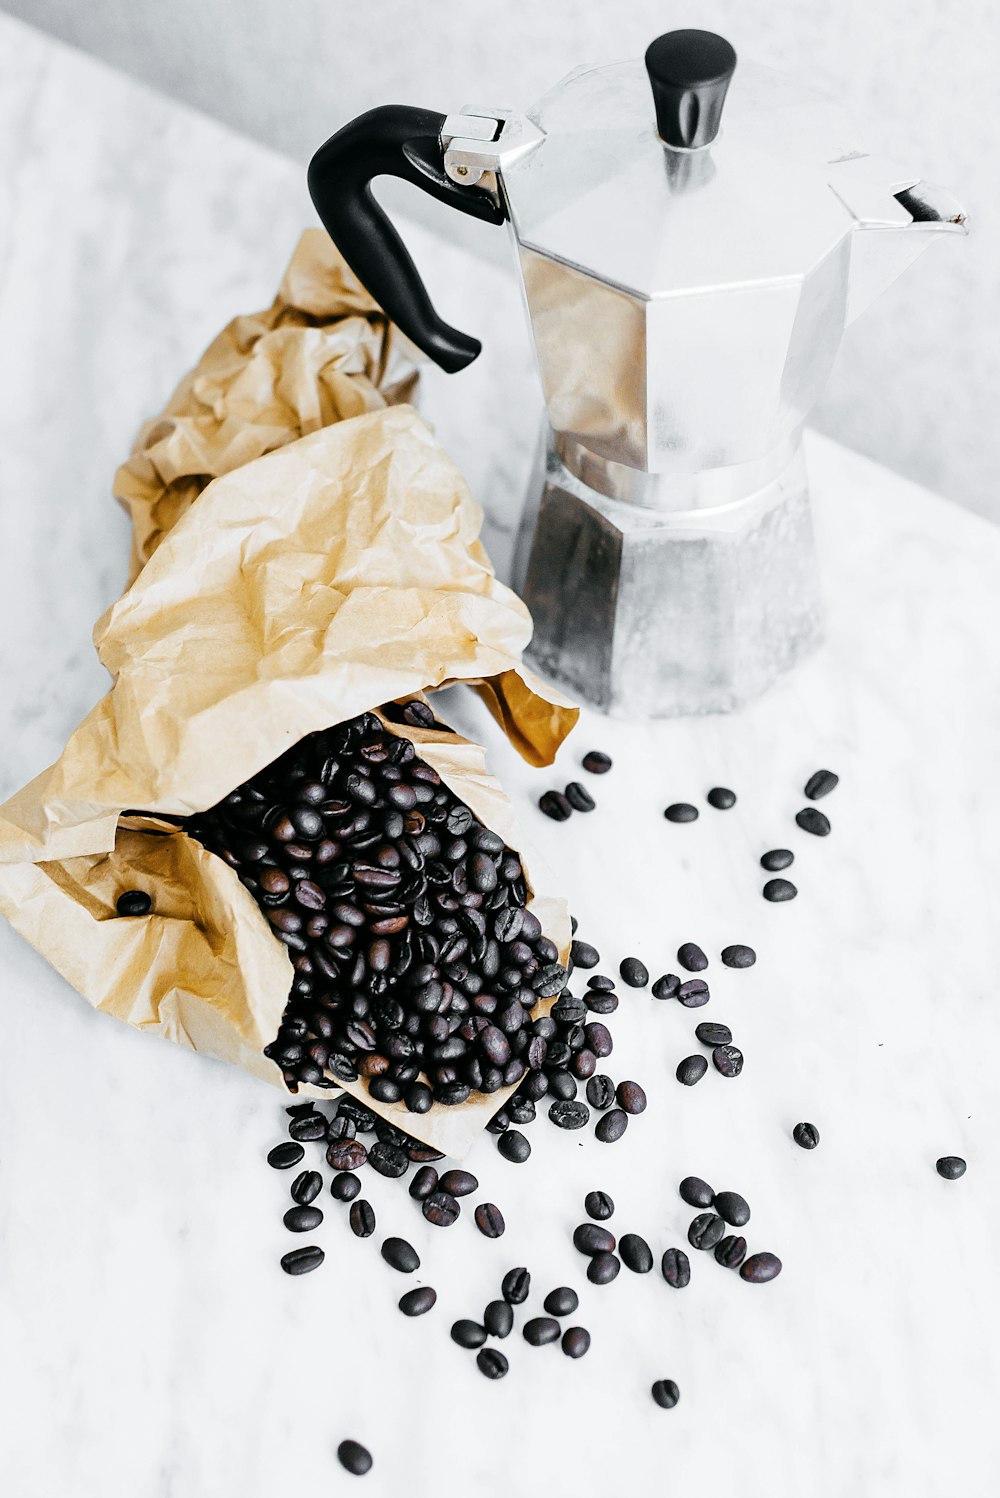 ブラックコーヒー豆とグレーモカポット